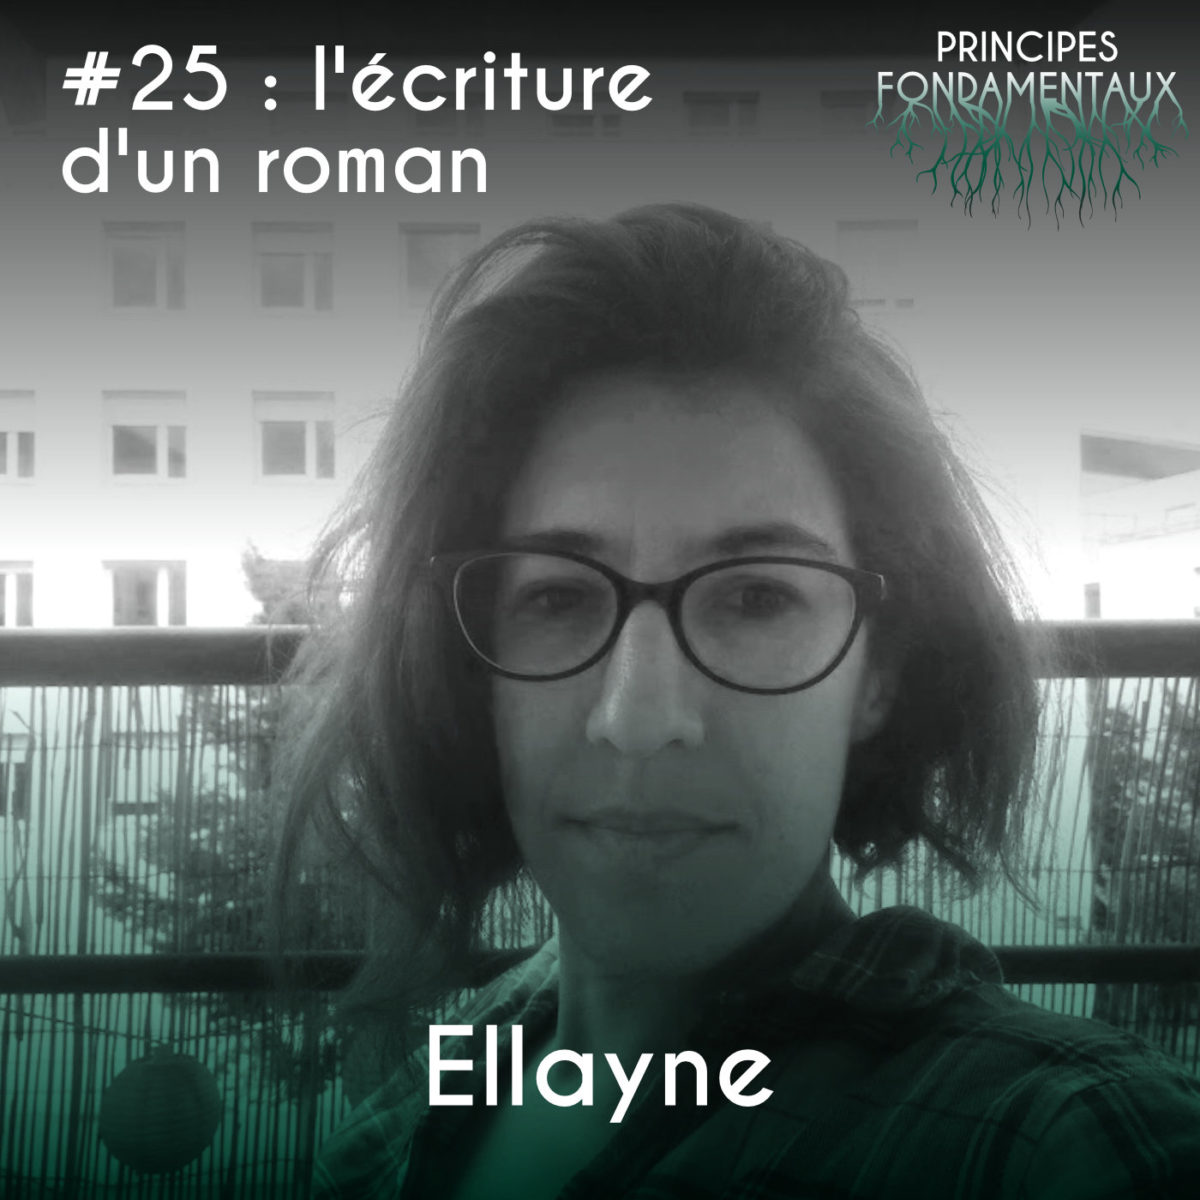 Couverture Podcast #25 : Ellayne - l'écriture d'un roman